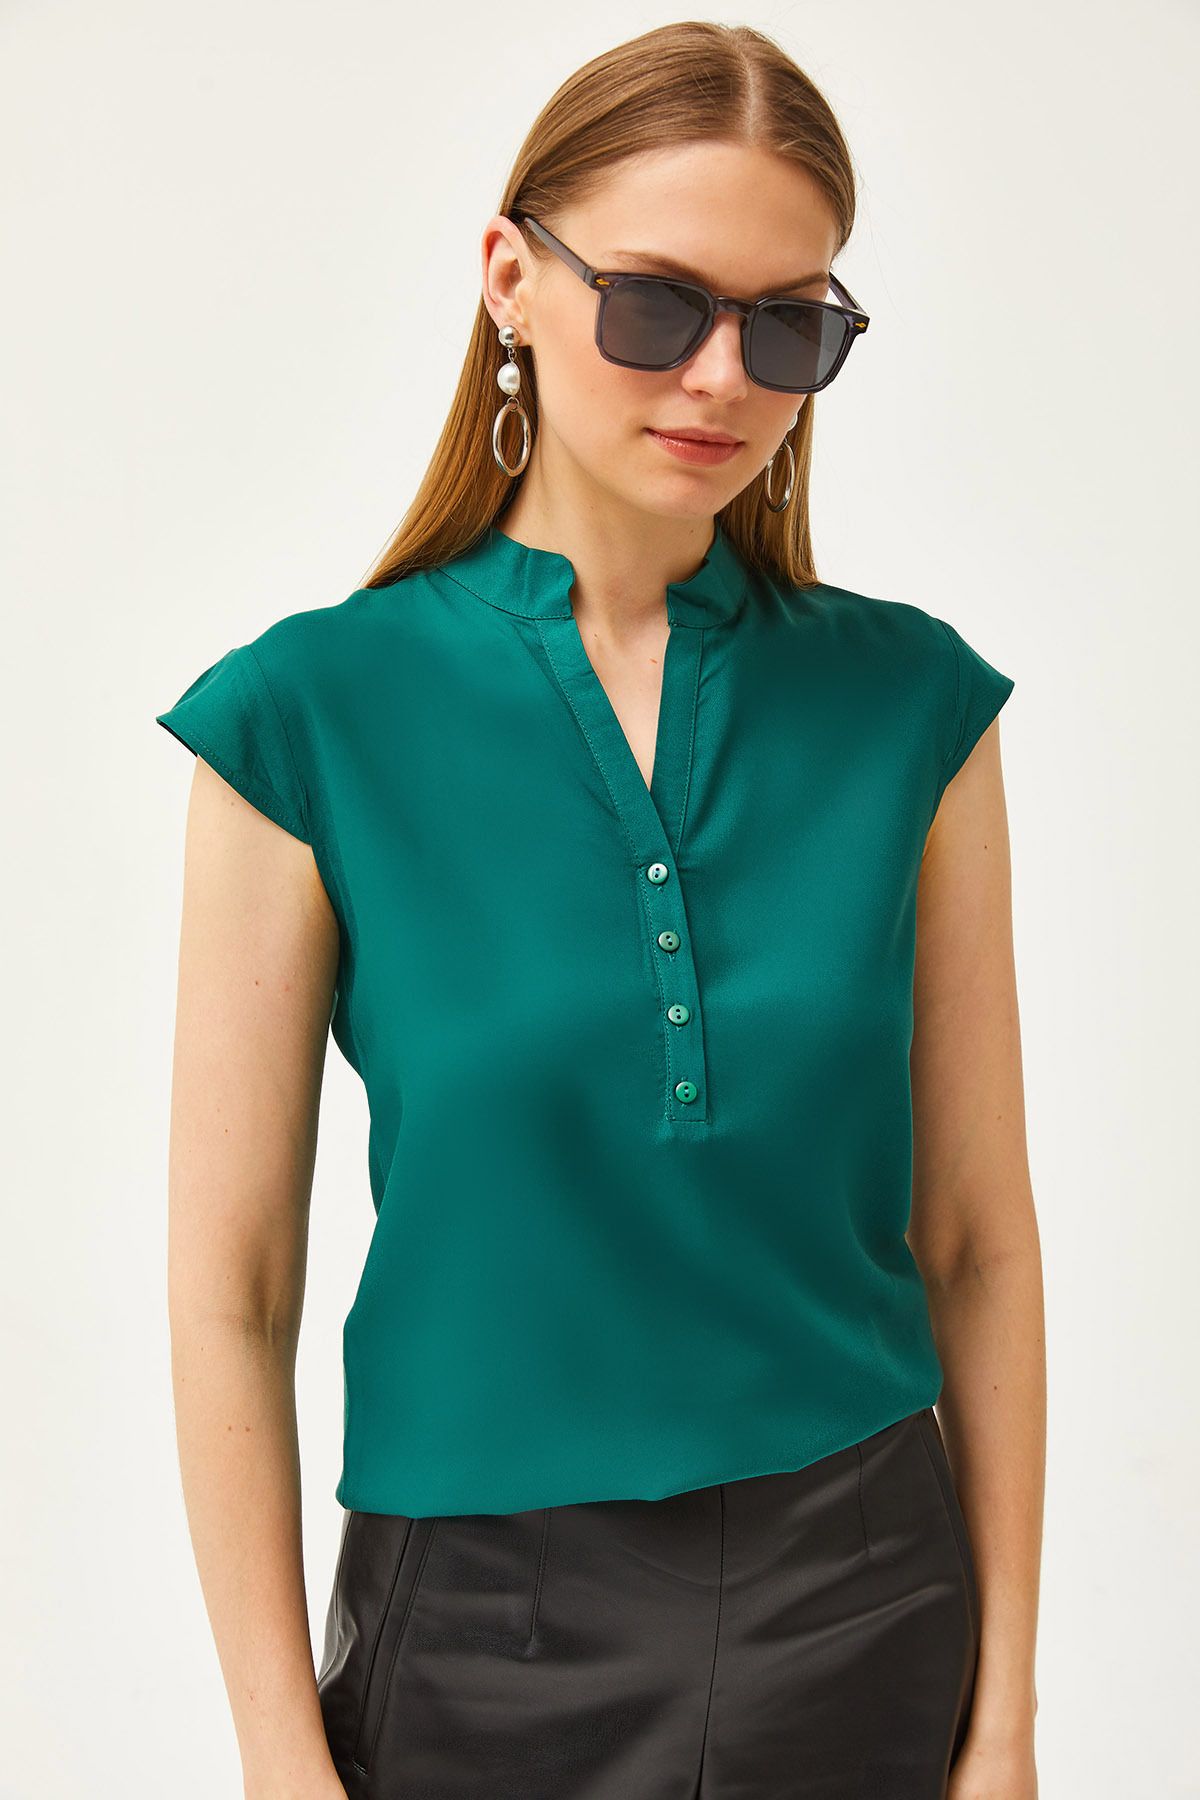 Olalook Kadın Zümrüt Yeşili V Yaka 4 Düğmeli Viskon Bluz BLZ-19000279